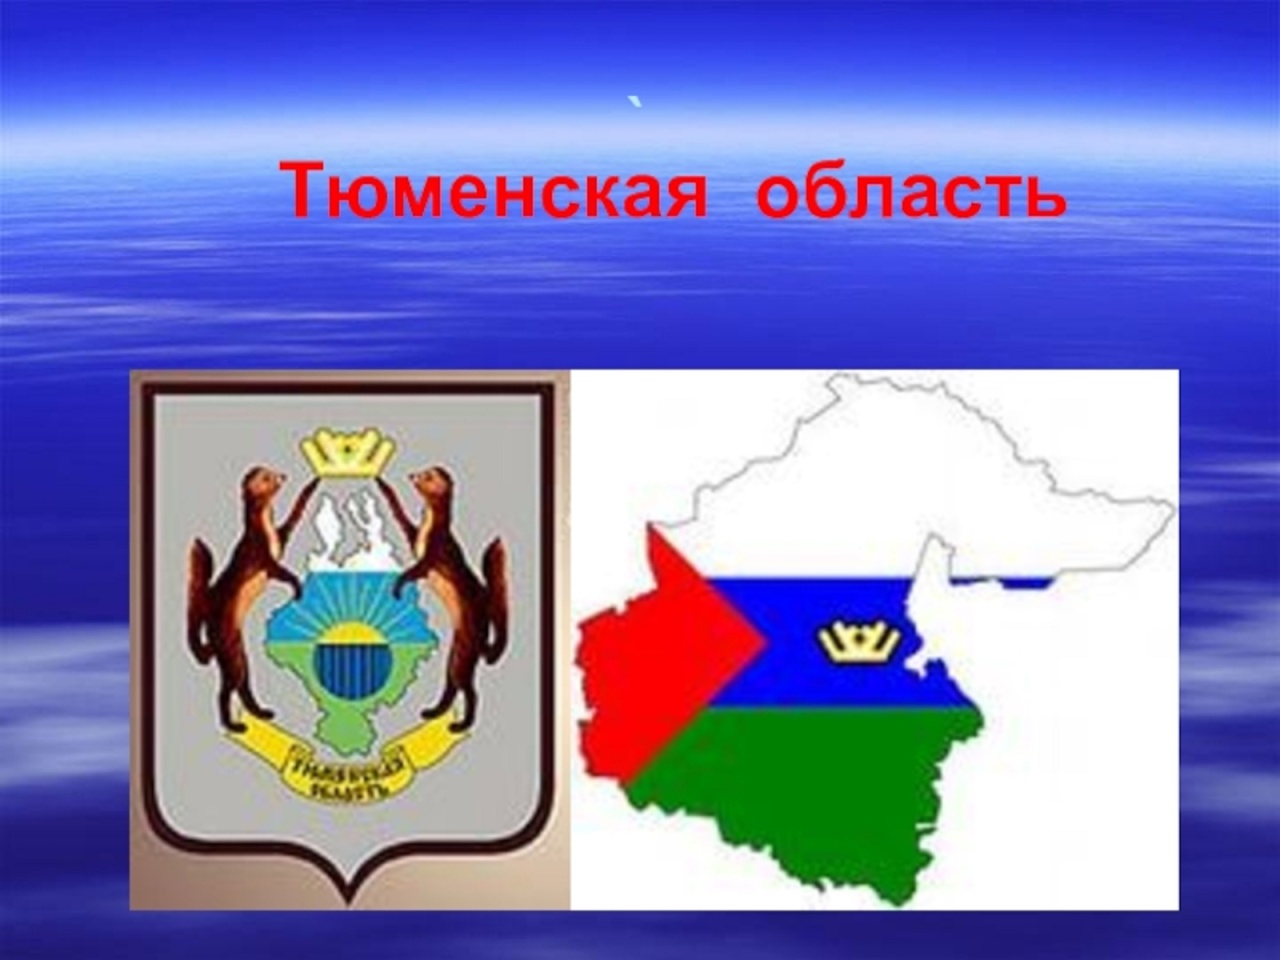 достопримечательности районов тюменской области